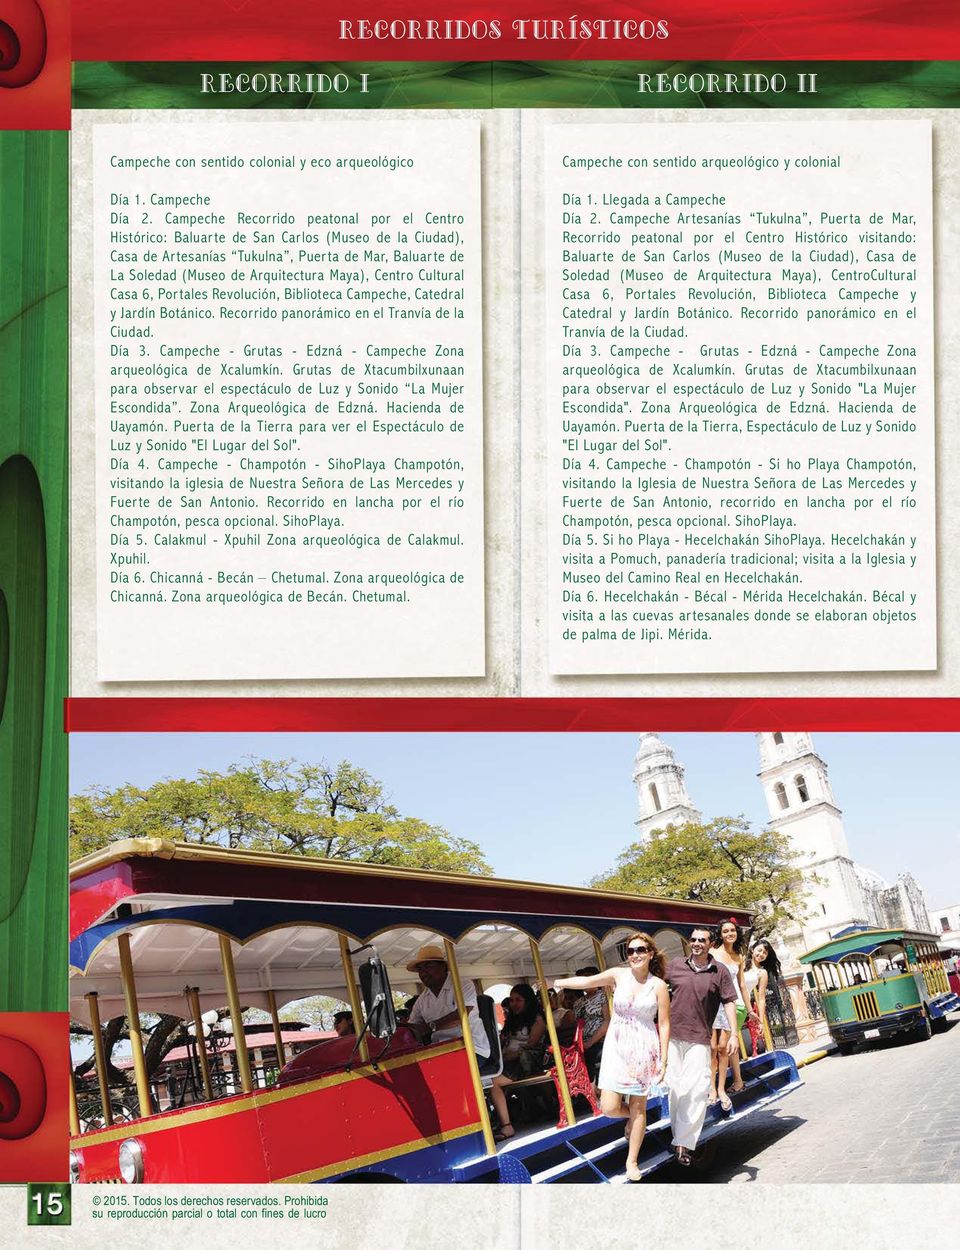 Centro Cultural Casa 6, Portales Revolución, Biblioteca Campeche, Catedral y Jardín Botánico. Recorrido panorámico en el Tranvía de la Ciudad. Día 3.